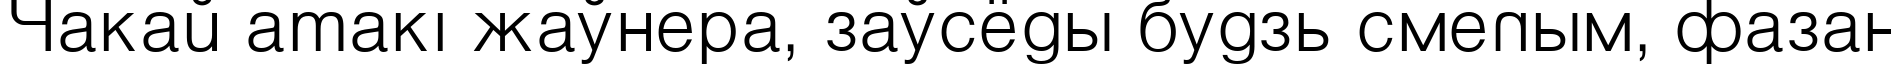 Пример написания шрифтом VantaLight текста на белорусском